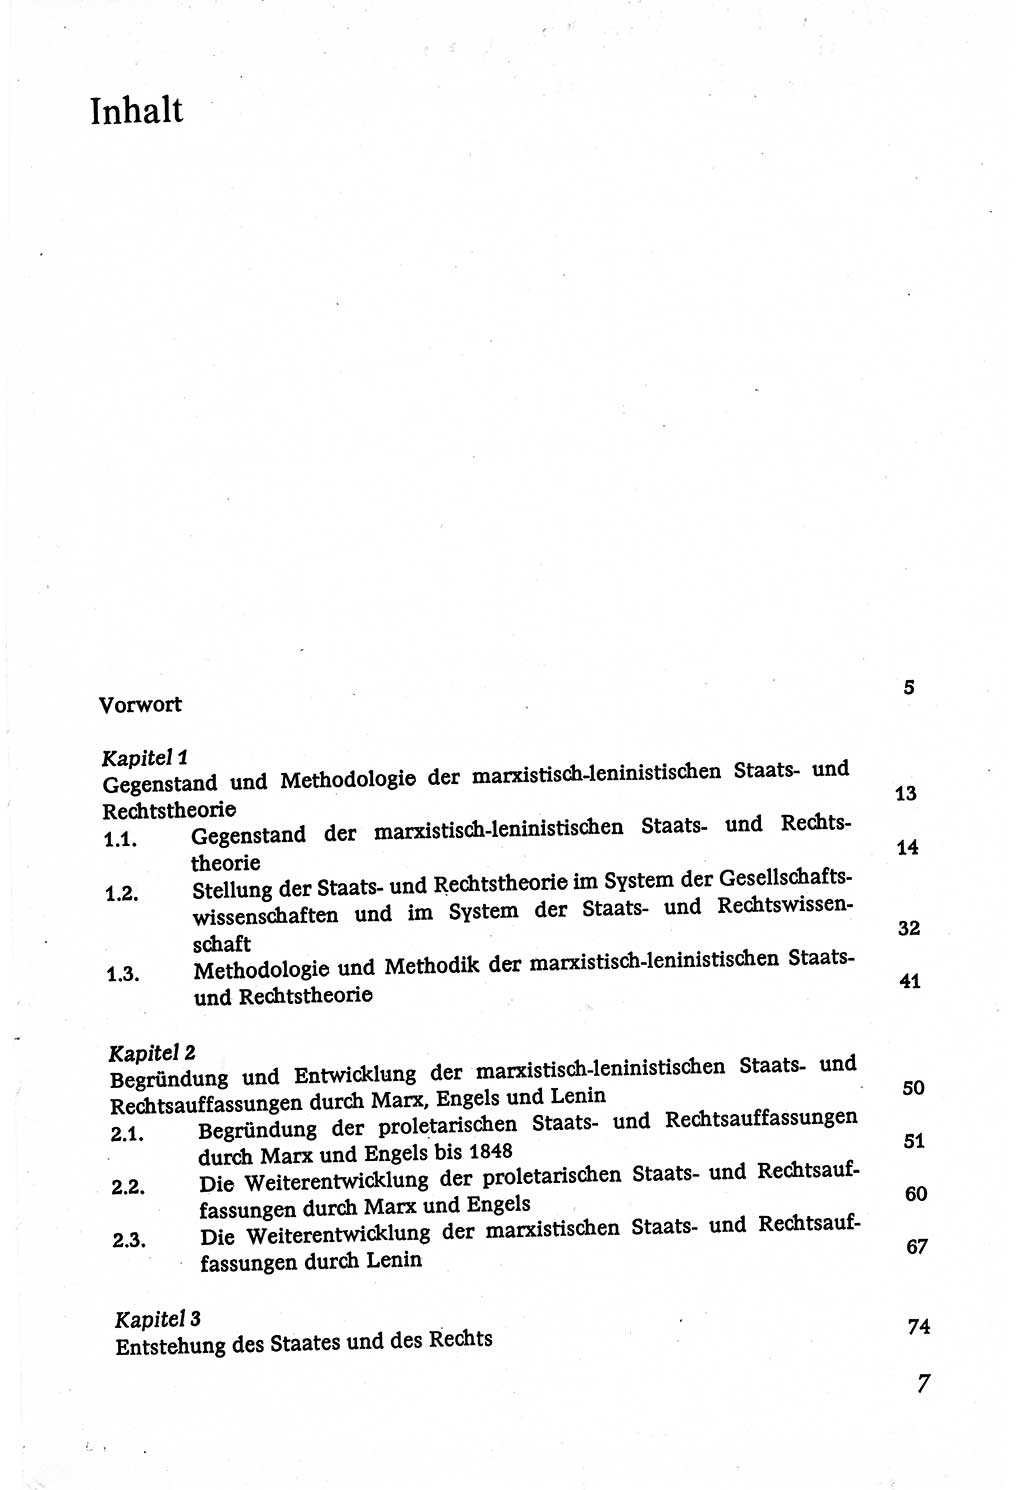 Marxistisch-leninistische (ML) Staats- und Rechtstheorie [Deutsche Demokratische Republik (DDR)], Lehrbuch 1980, Seite 7 (ML St.-R.-Th. DDR Lb. 1980, S. 7)